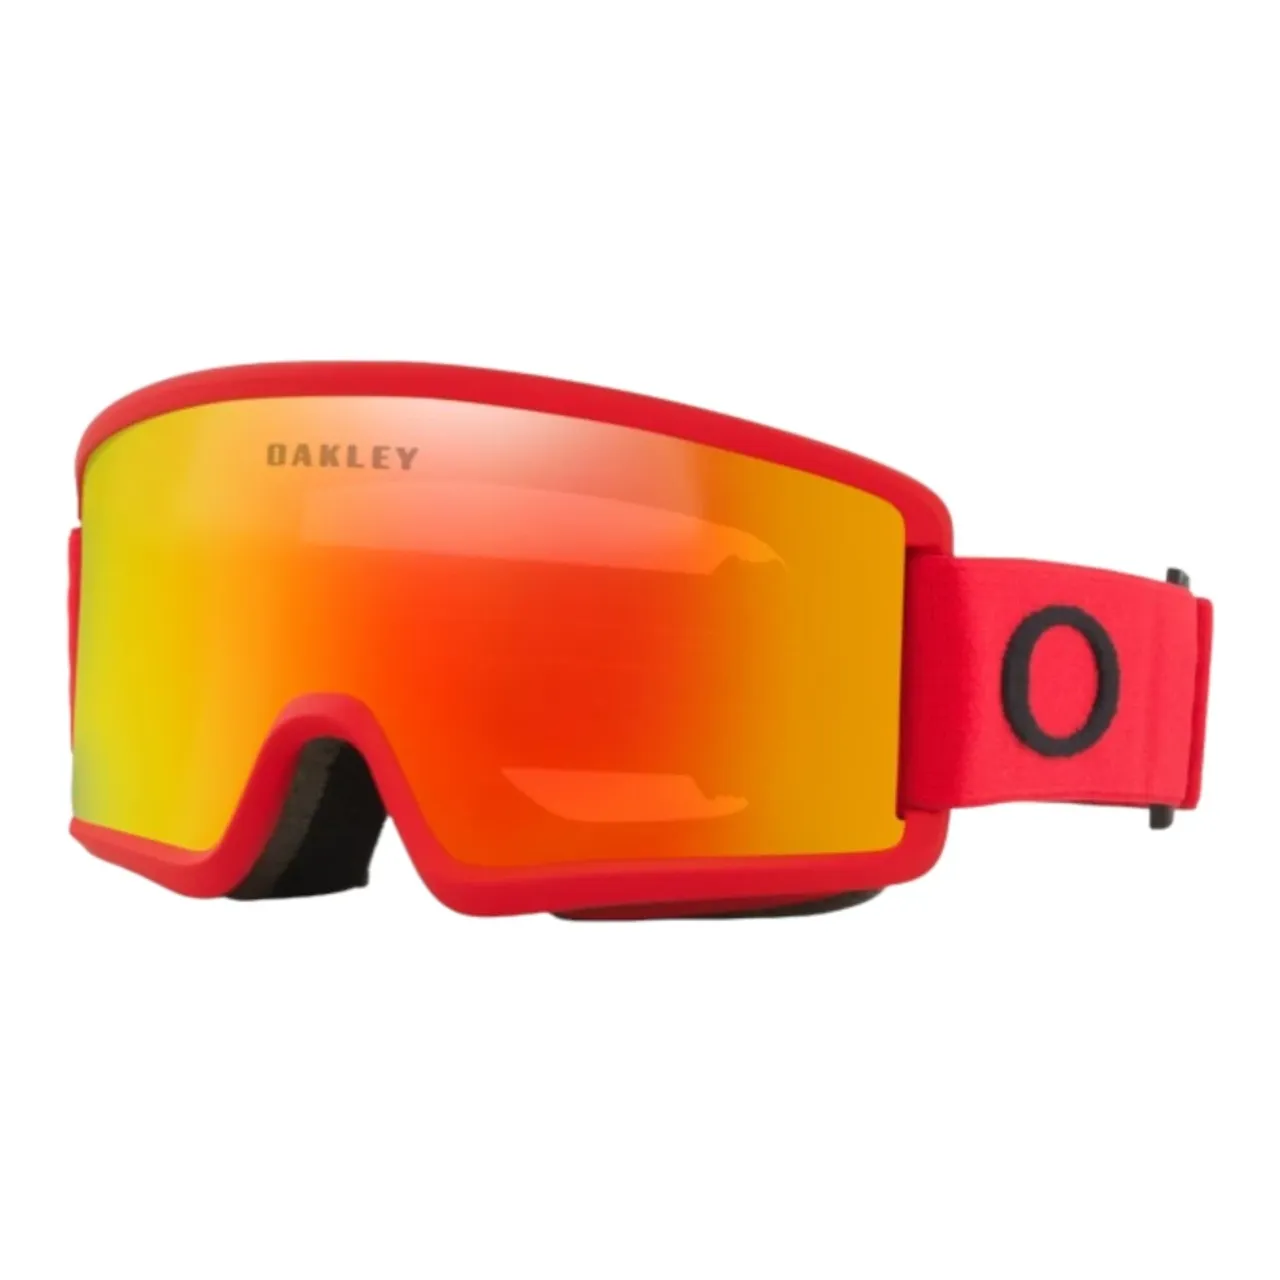 Oakley - Sport 